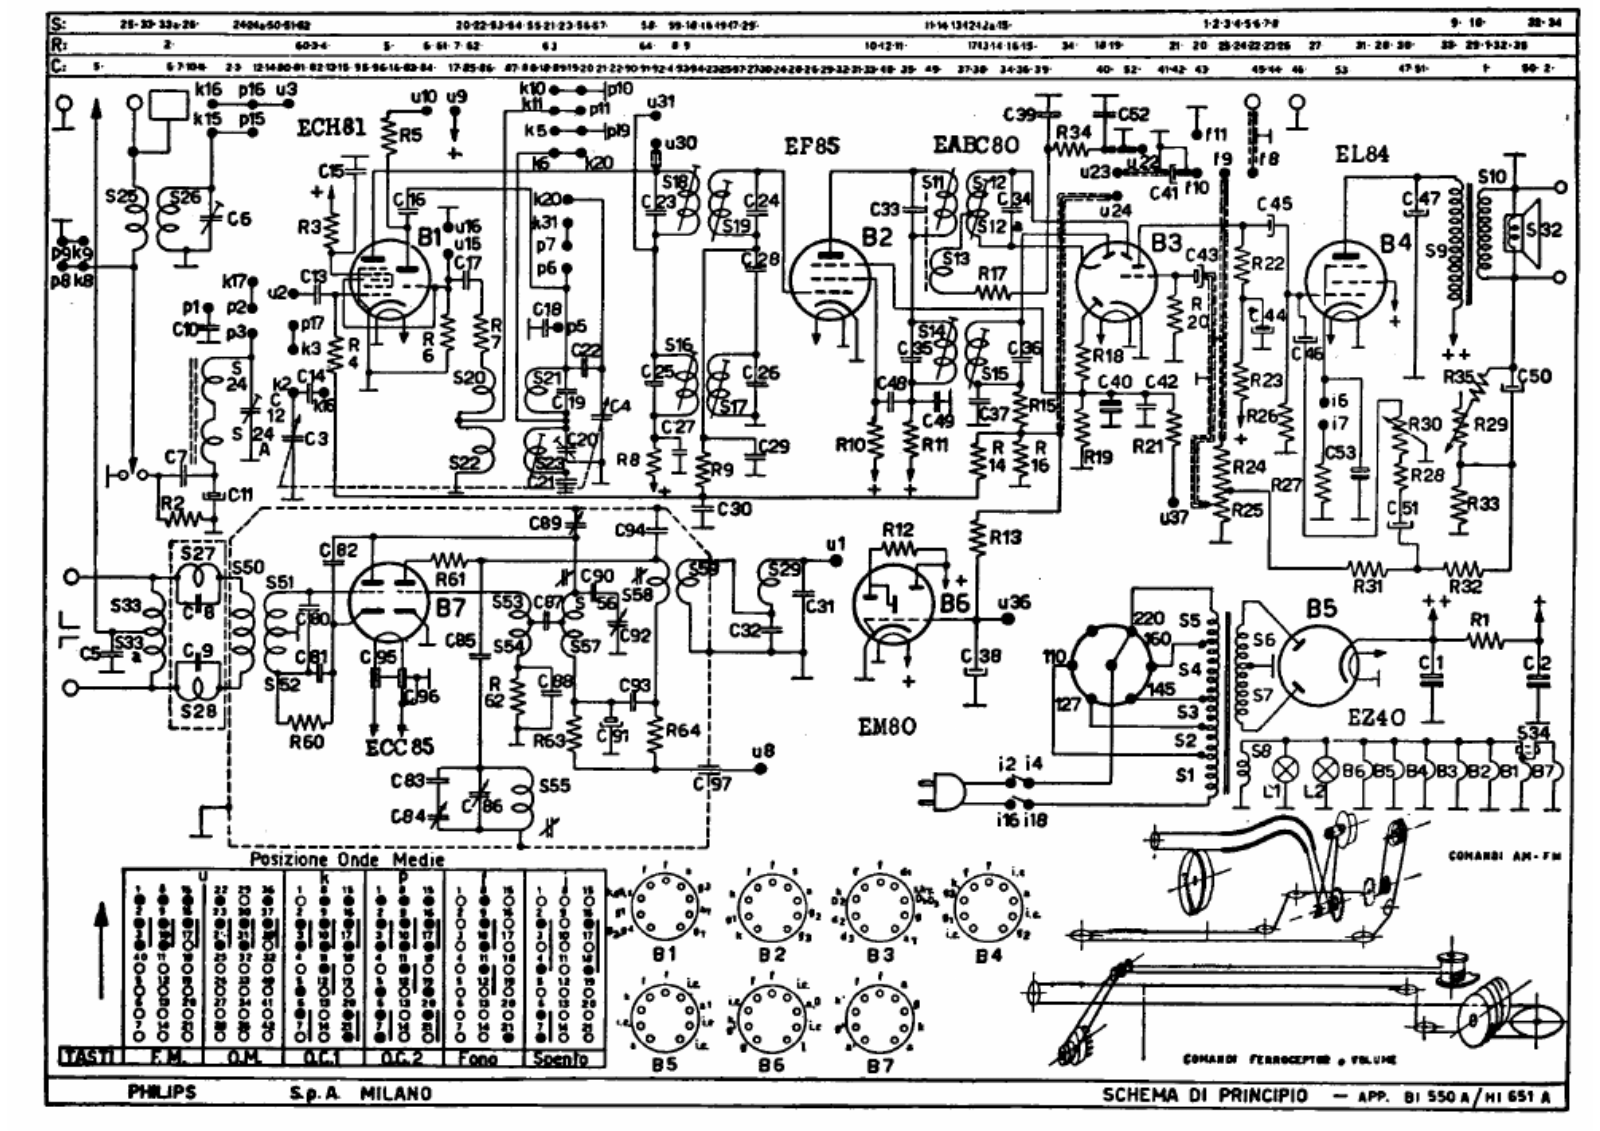 Philips bi550a, hi651a schematic